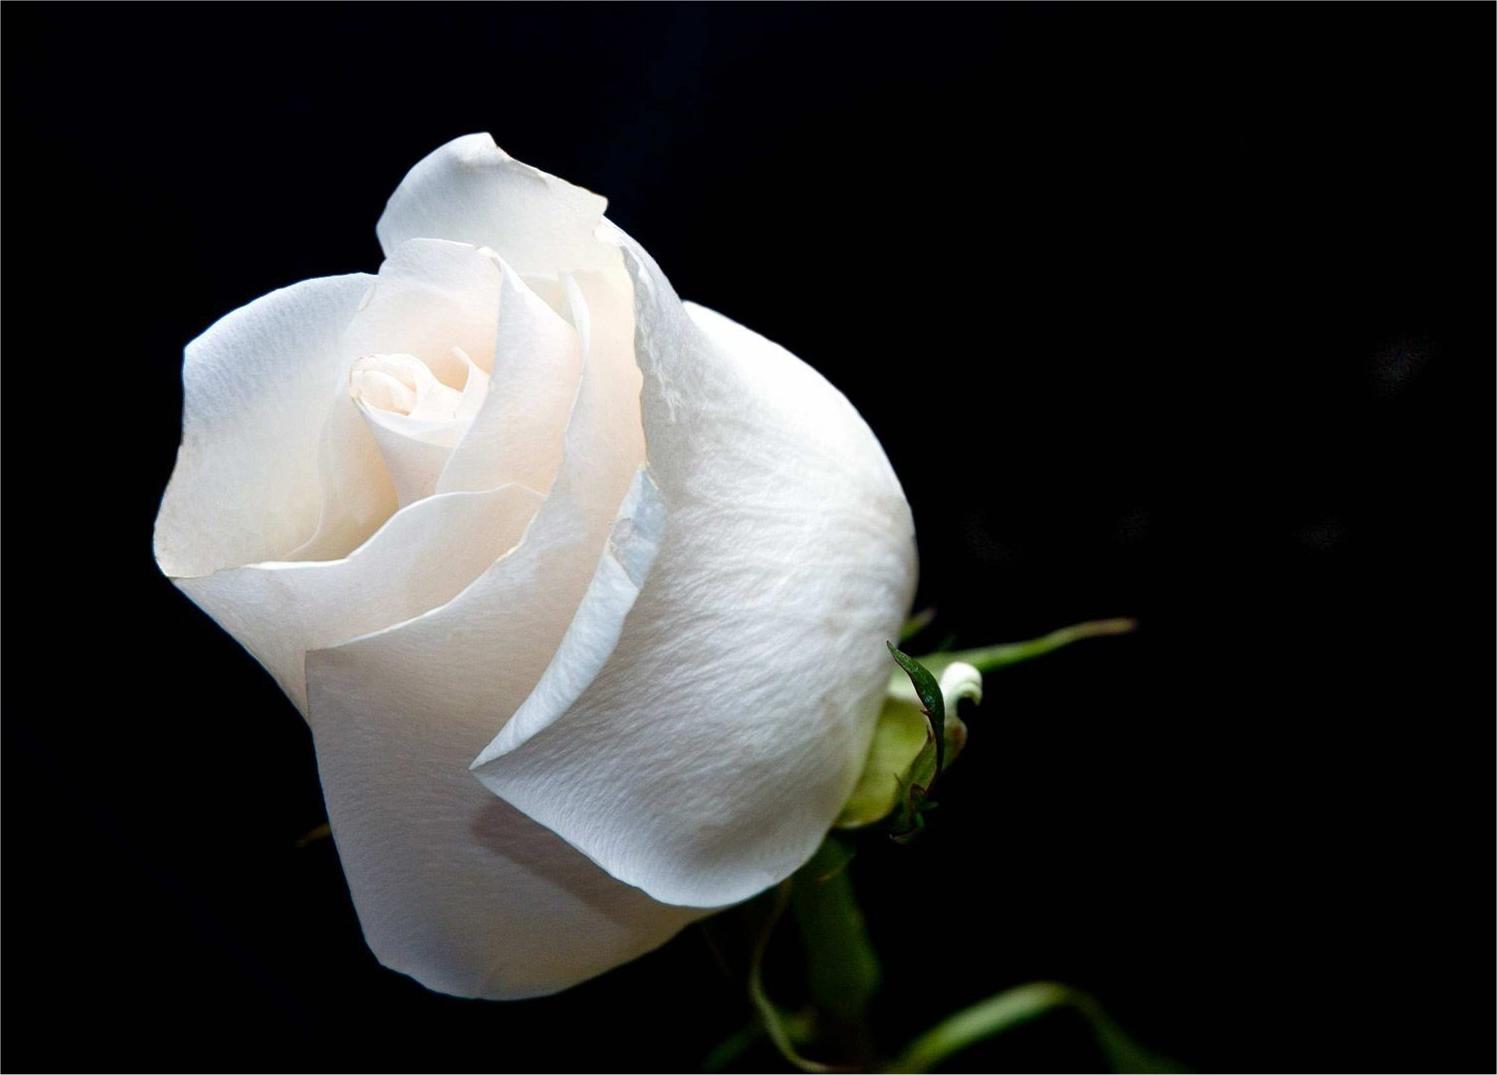 Hoa hồng trắng là biểu tượng của tình yêu trong sáng, sự hiền hòa và tuyệt đối. Với những cánh hoa trắng tinh khôi đong đầy cảm xúc và cảm nhận được sự tình cảm sâu sắc. Hãy cùng khám phá hình ảnh đẹp của hoa hồng trắng để trải nghiệm sự lãng mạn và tuyệt vời của tình yêu.